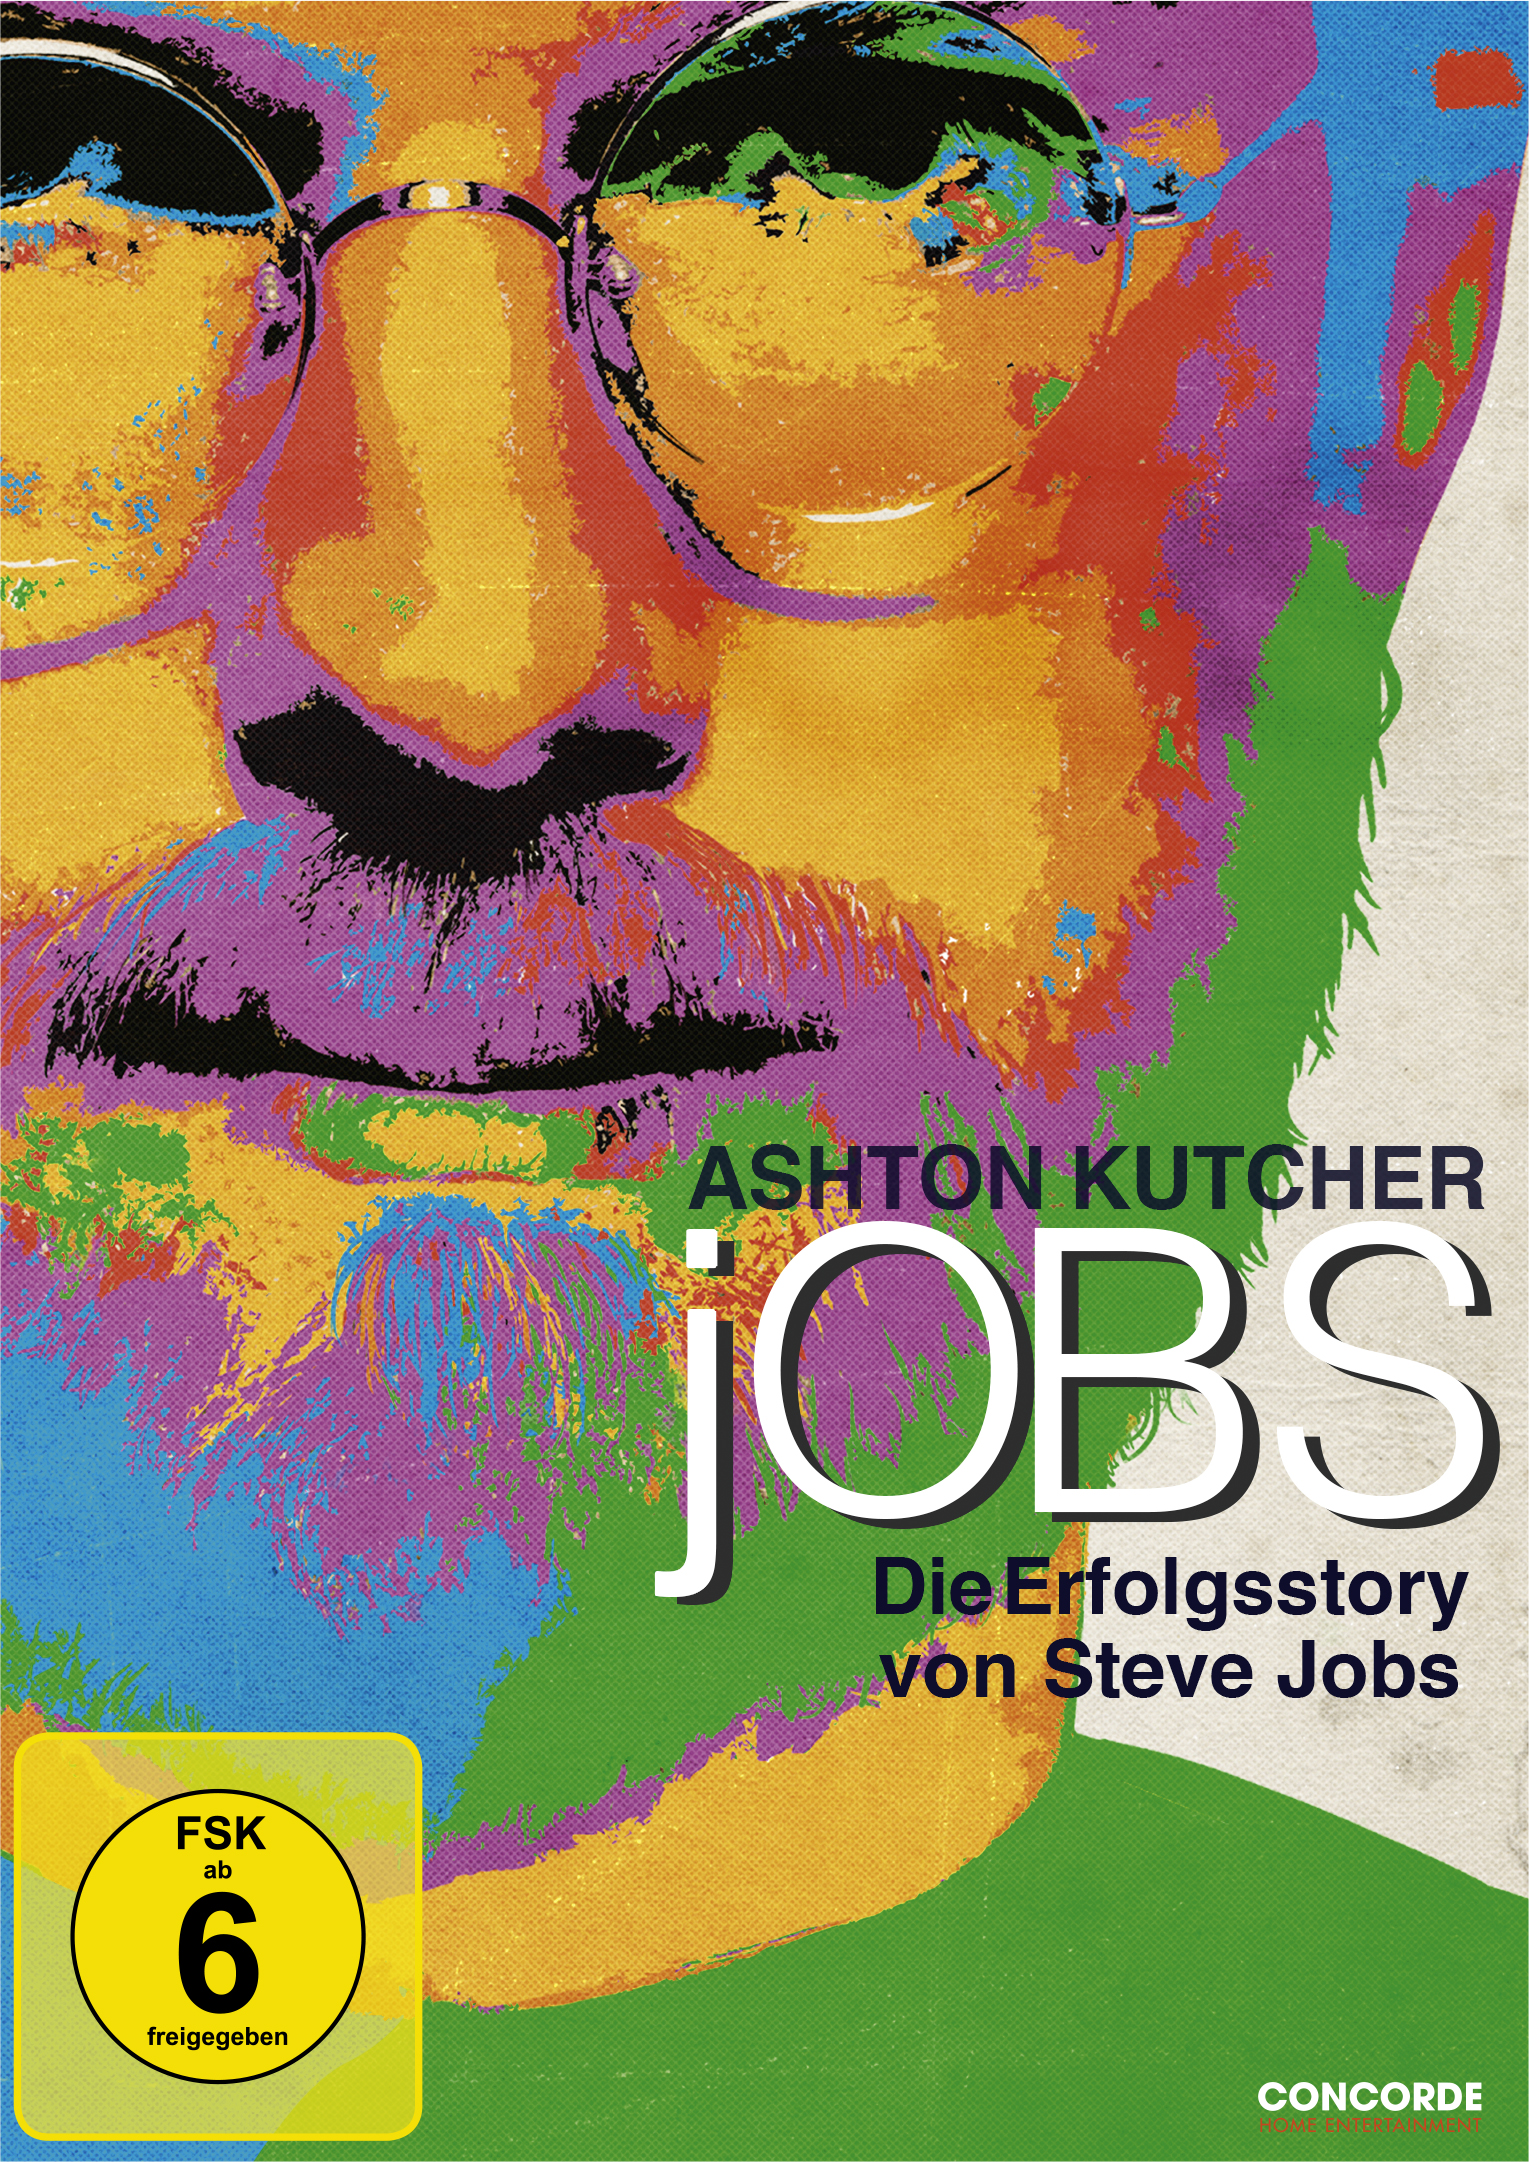 jOBS - Die Erfolgsstory von Steve Jobs DVD